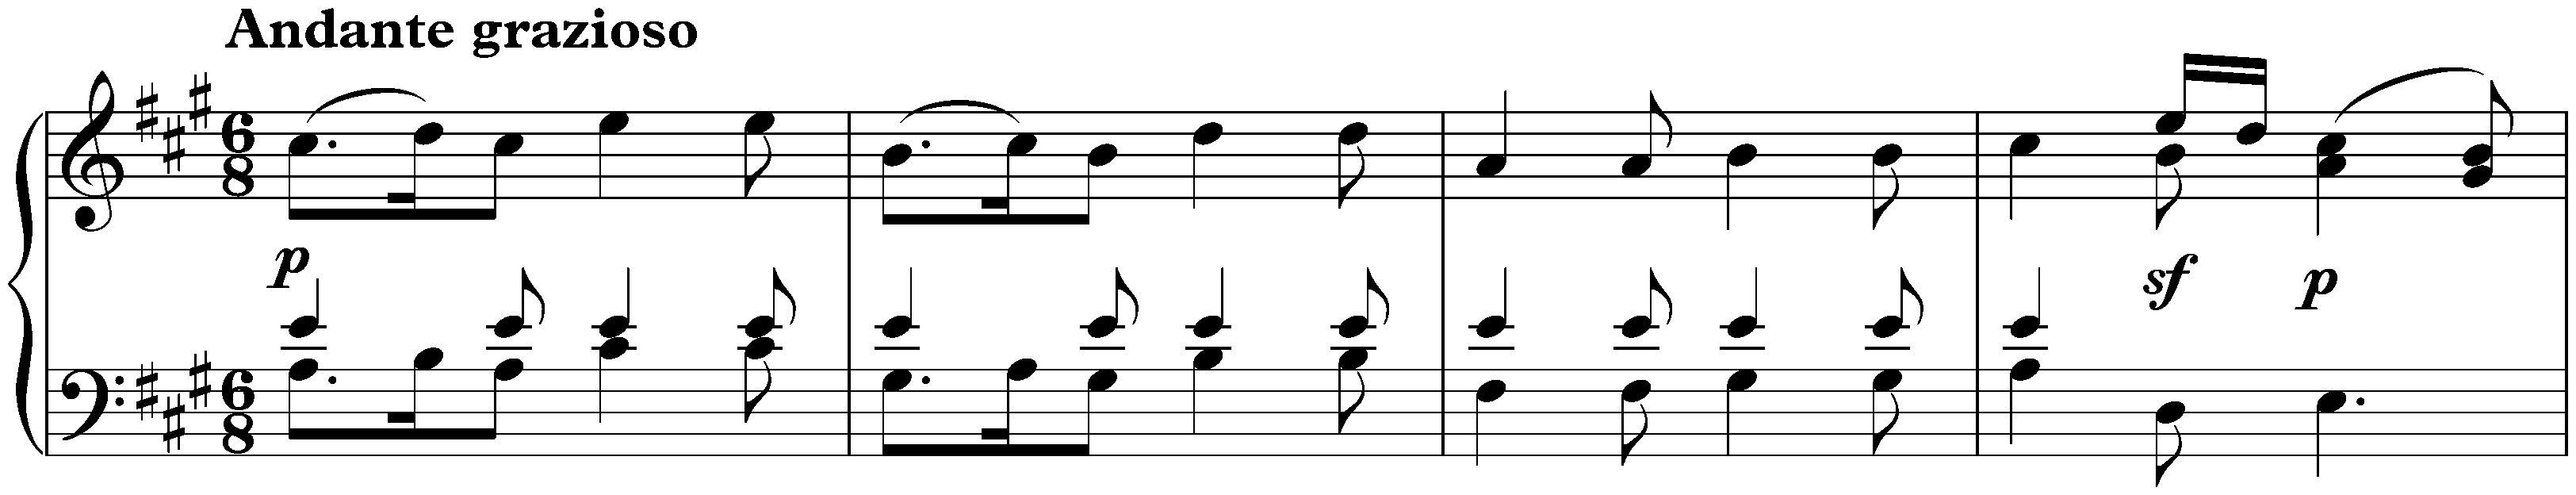 Sonata in A major, KV 331/300i; 1. Andante grazioso